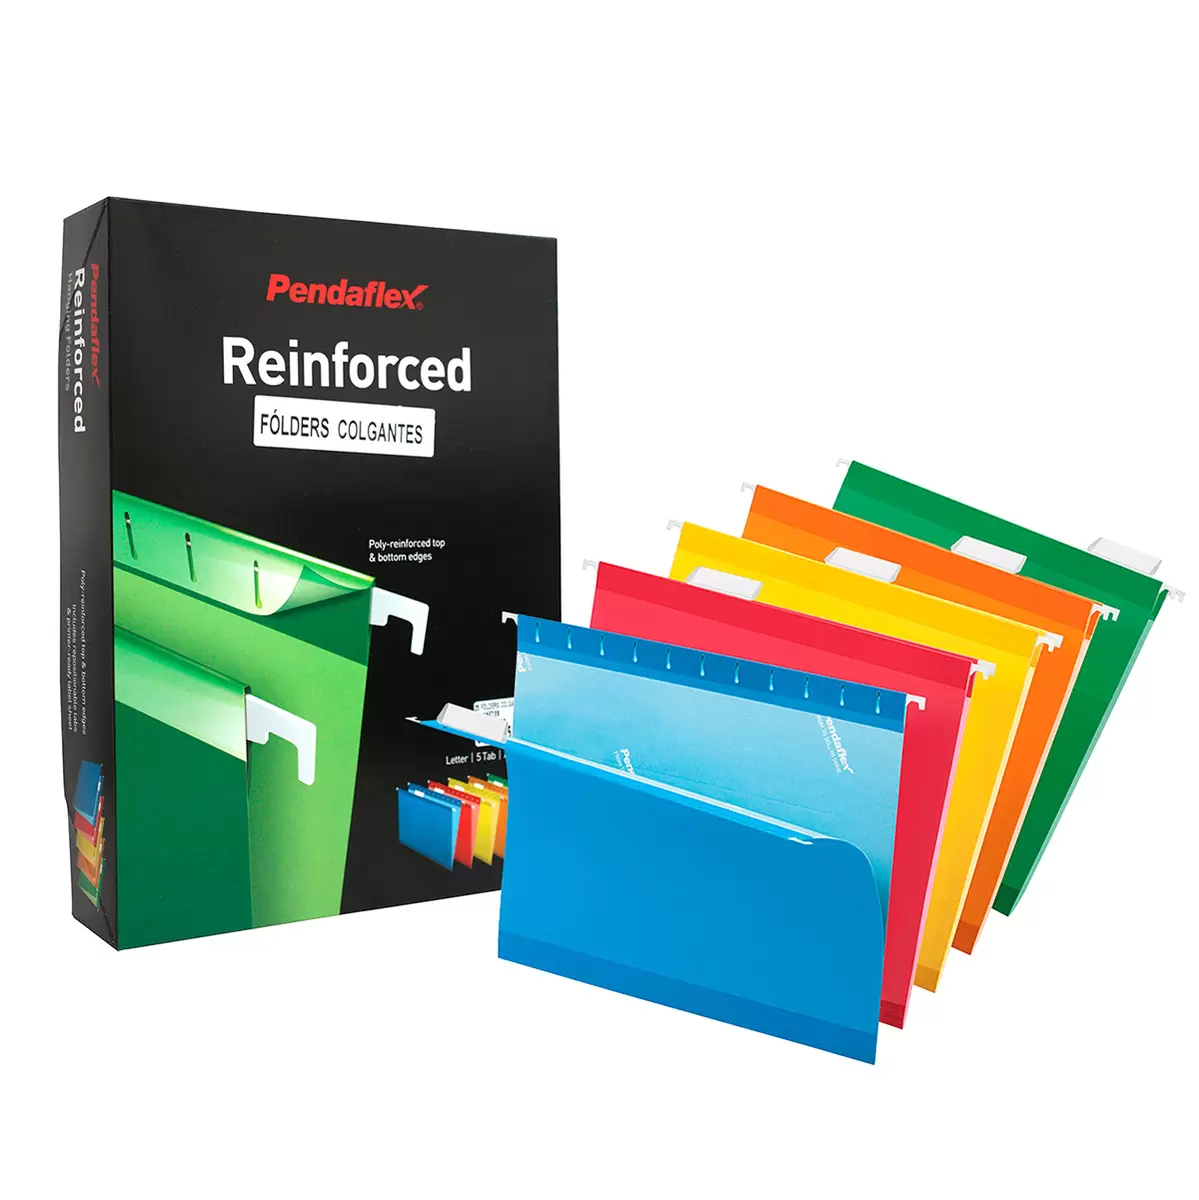 Folder colgante Pendaflex carta colores  Pre-doblez para expansión de 3.81 cm, entintado mas claro en interior, incluye jinetes plásticos transparentes y hoja de etiquetas, varillas recubiertas, 10% fibra reciclada y 10% post-consumo, colores: azul, amarillo y rojo, caja con 25 piezas.           surtidos caja con 25 pzas                - 92540